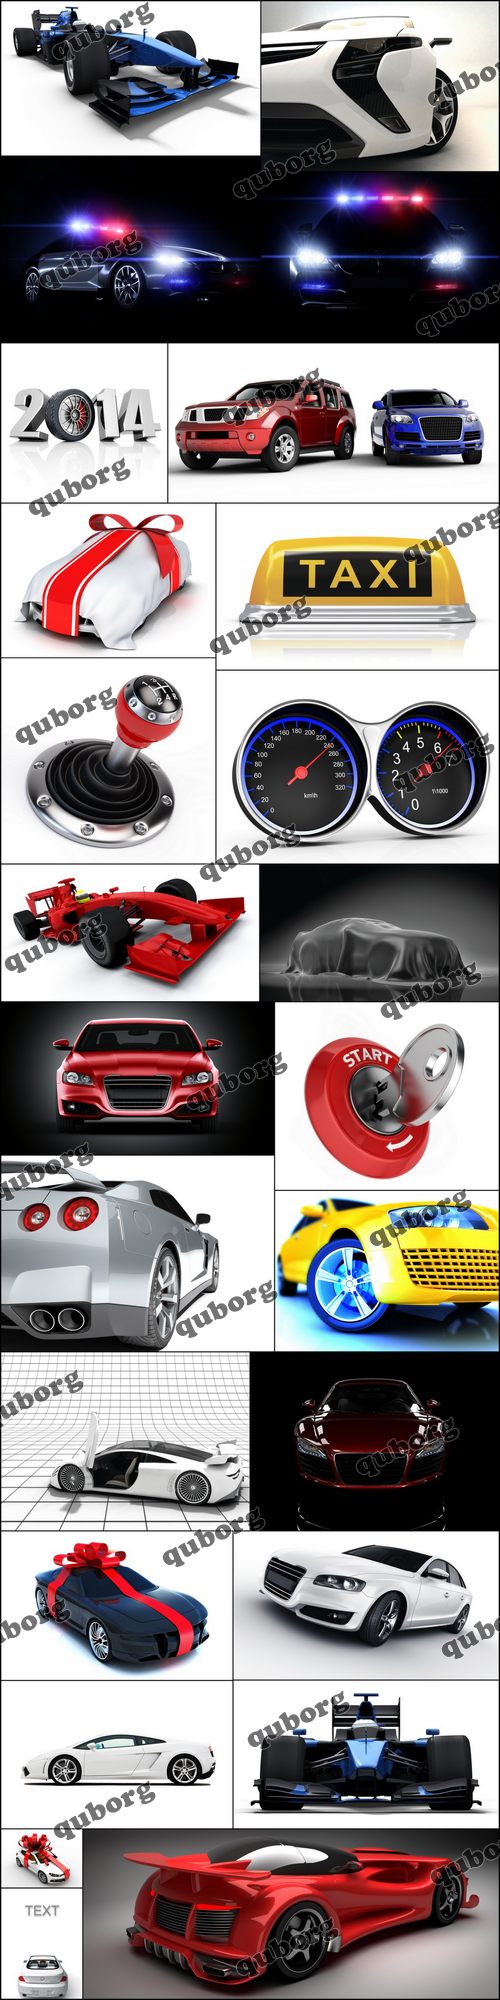 Stock Photos - 3D Render Cars 2